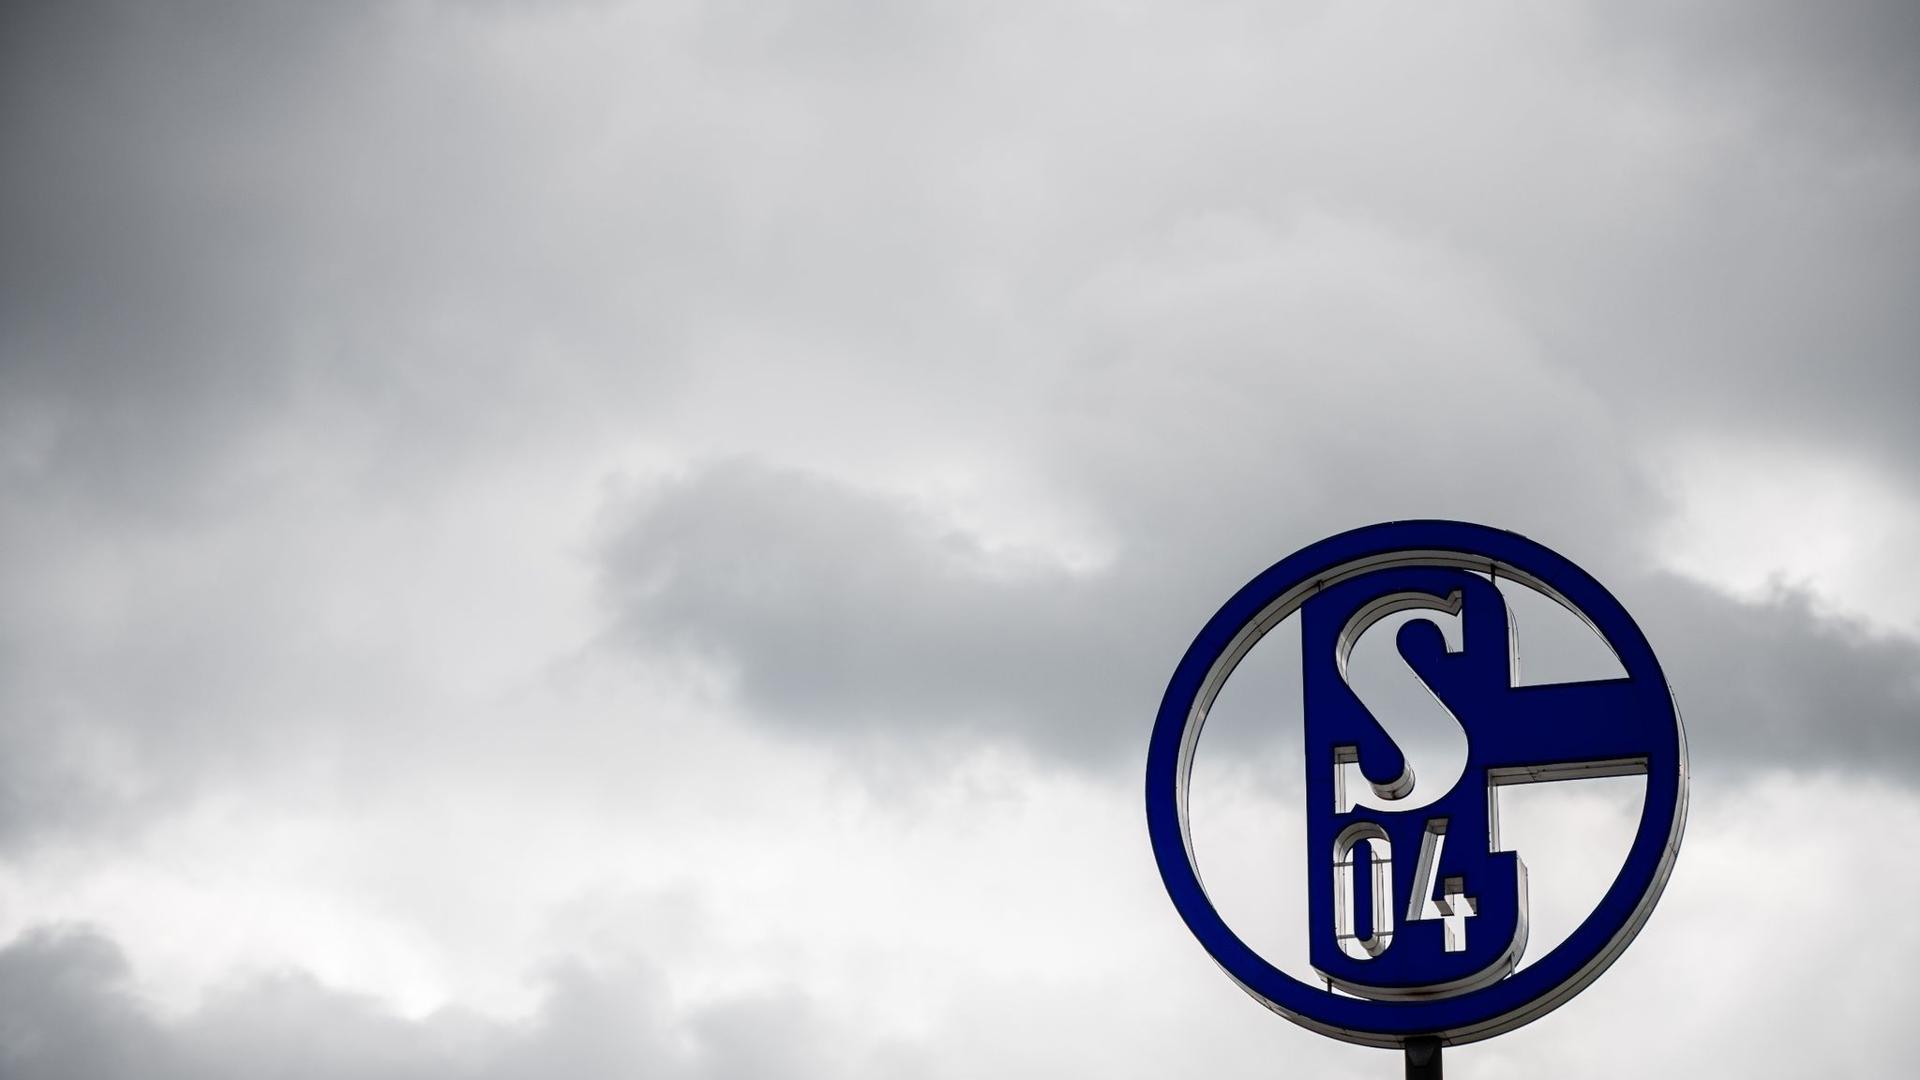 Die NRW-Landesregierung hat laut Ministerpräsident Armin Laschet keine Entscheidung über eine Bürgschaft für den FC Schalke 04 getroffen.